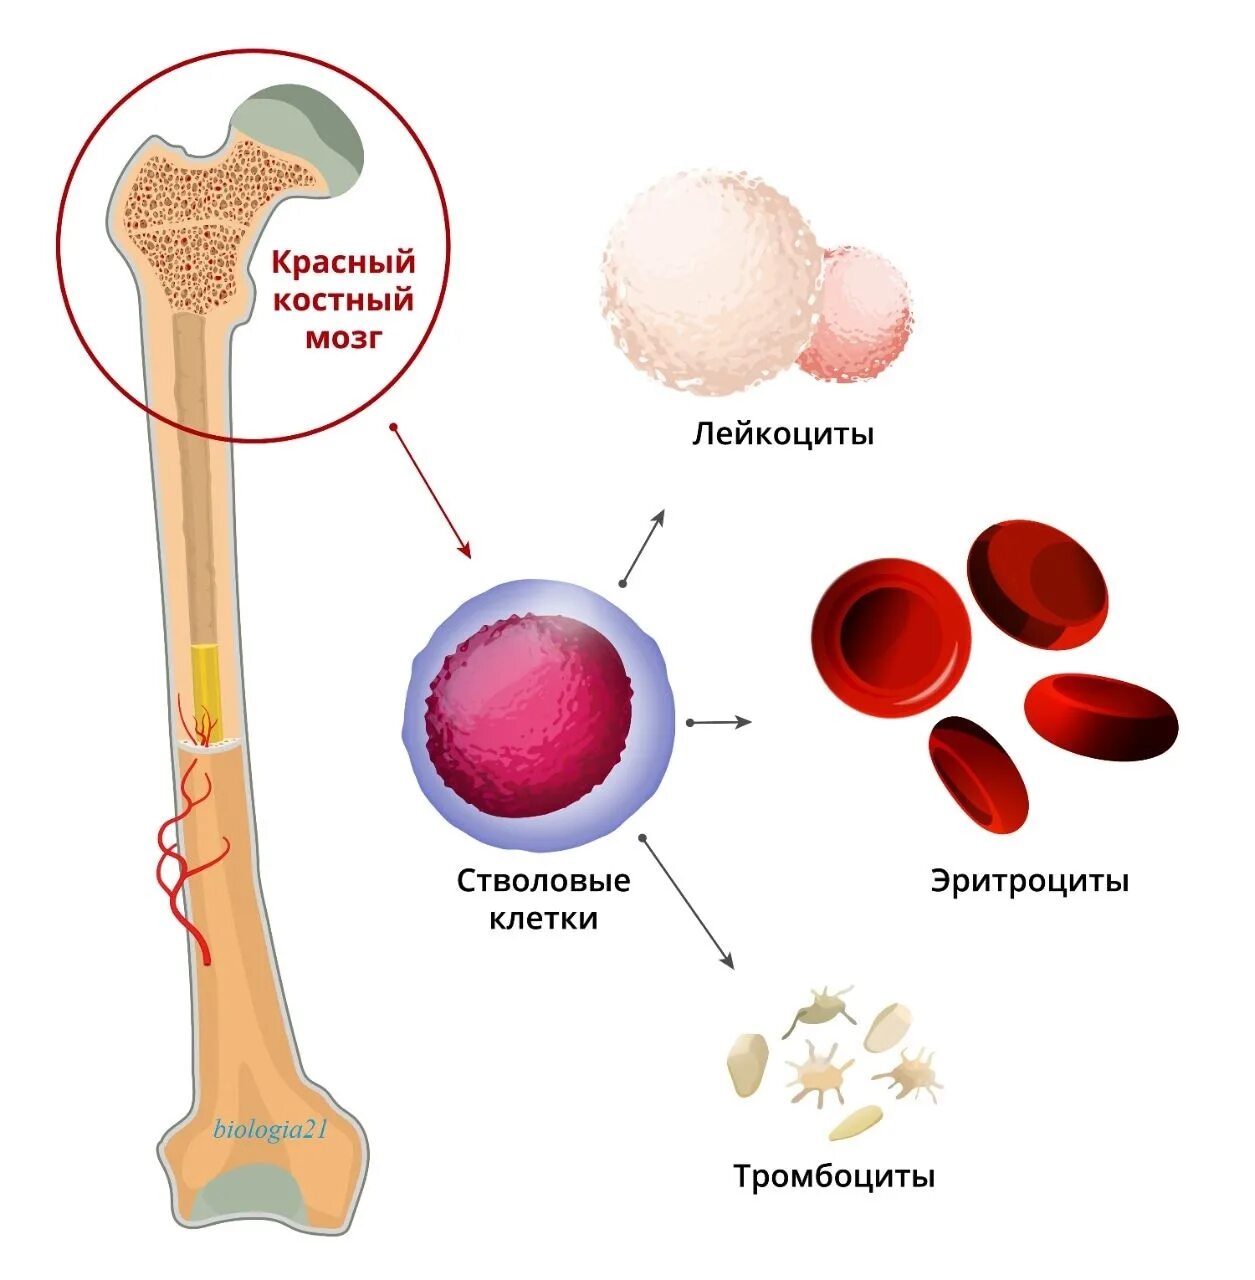 Клетки образующиеся в красном костном мозге. Стволовых клеток красного костного мозга:. Гемопоэтические компоненты красного костного мозга. Красный костный мозг анатомические образования. Остеогенные клетки красного костного мозга.